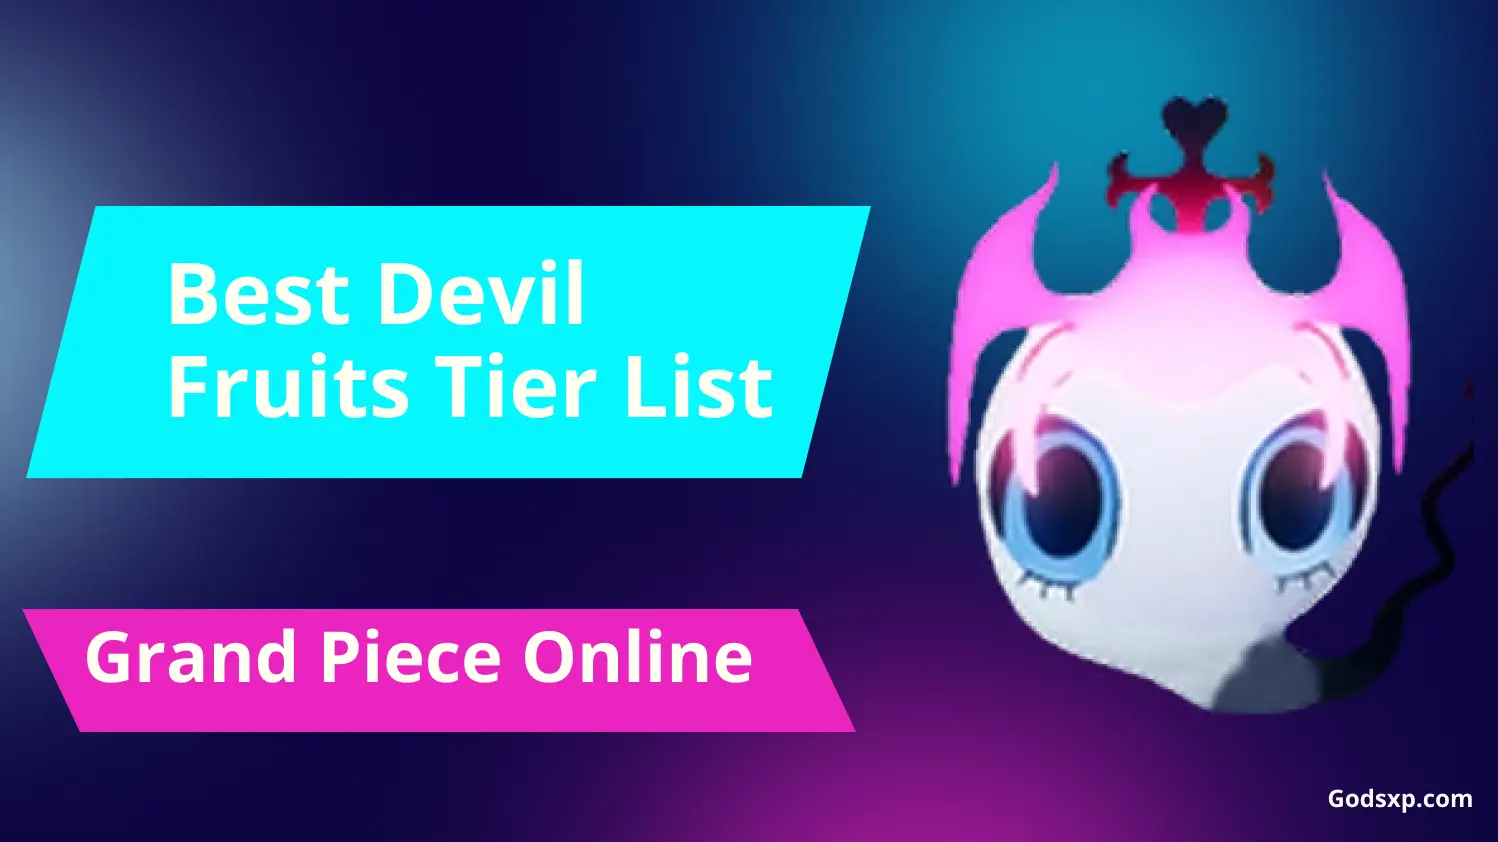 GPO Fruit Tier List - Best Devil Fruits in Grand Piece Online